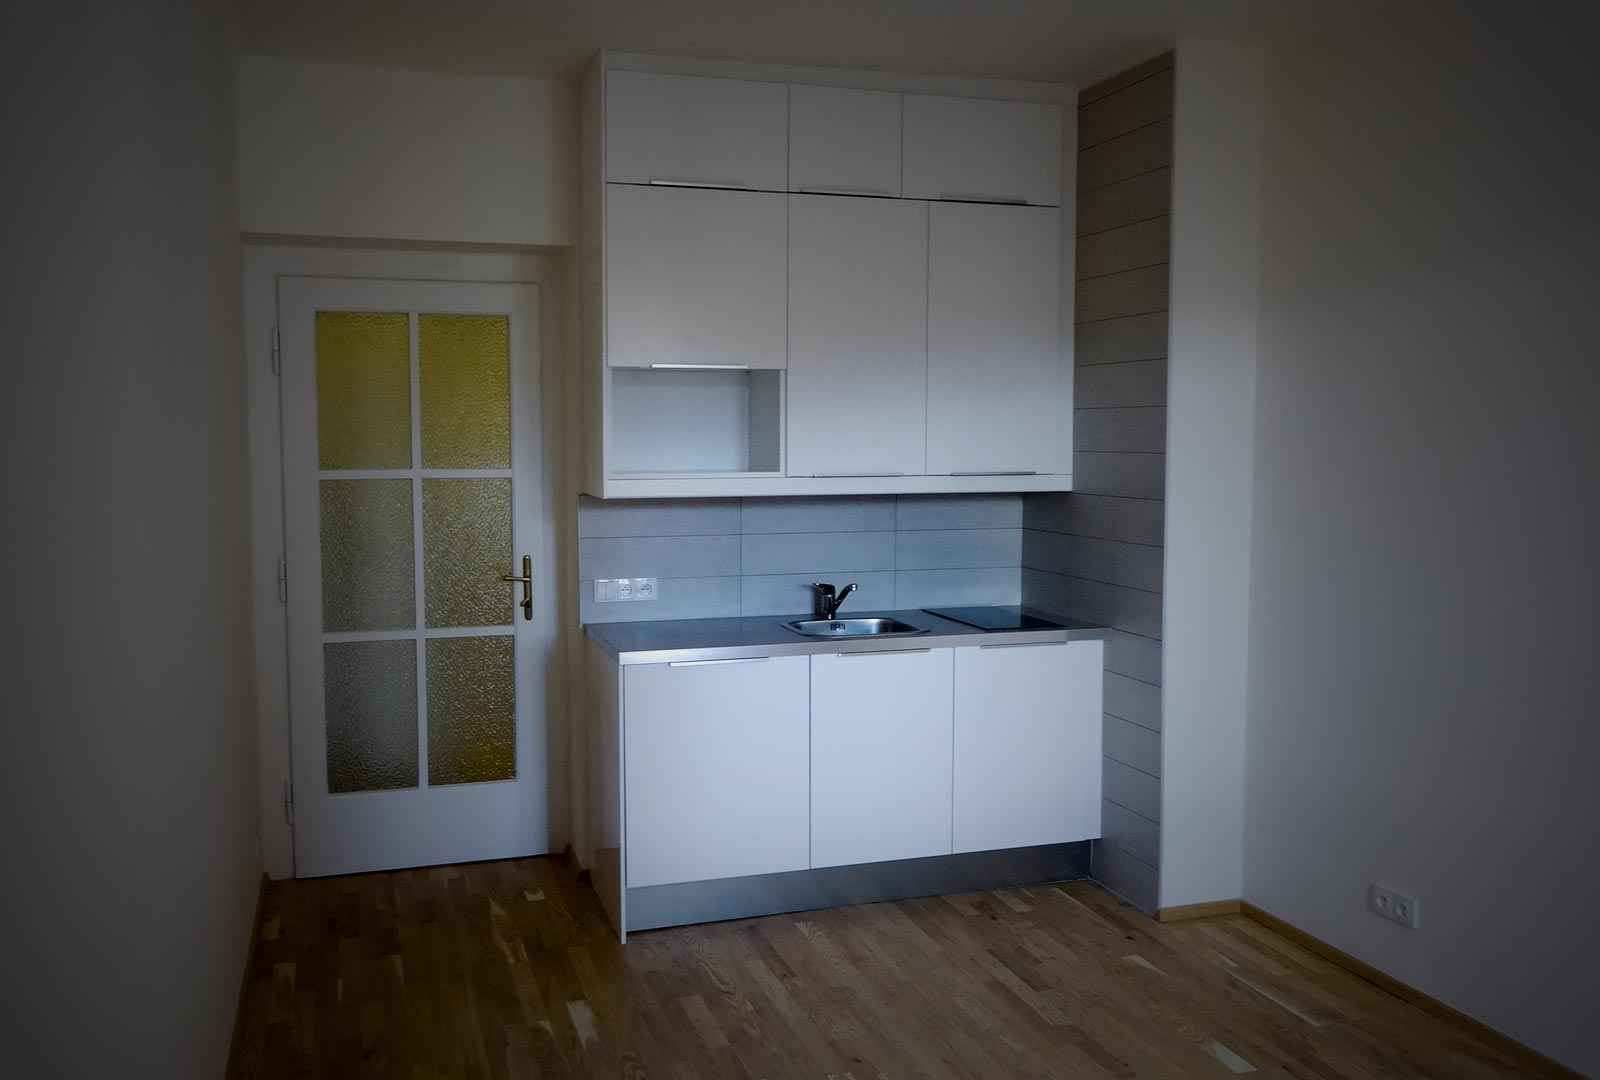 Kompletní rekonstrukce bytu | Interiéry - Exteriéry Ševčík & Knobloch